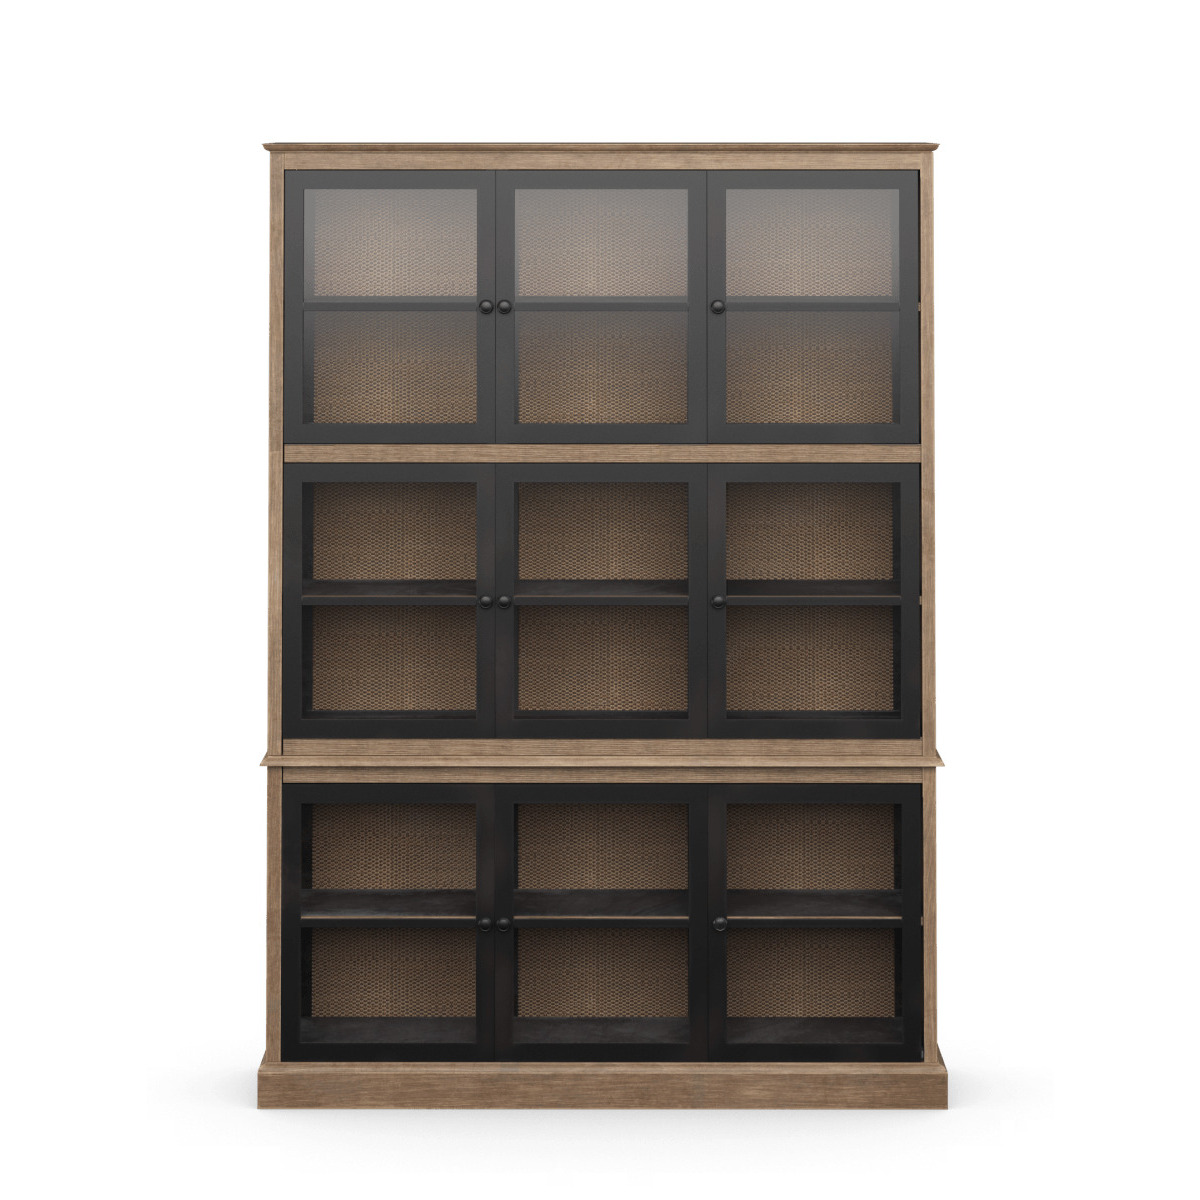 OKA, Pentomino Display Cabinet - Natural, Cabinets, Bayur Wood/Iron